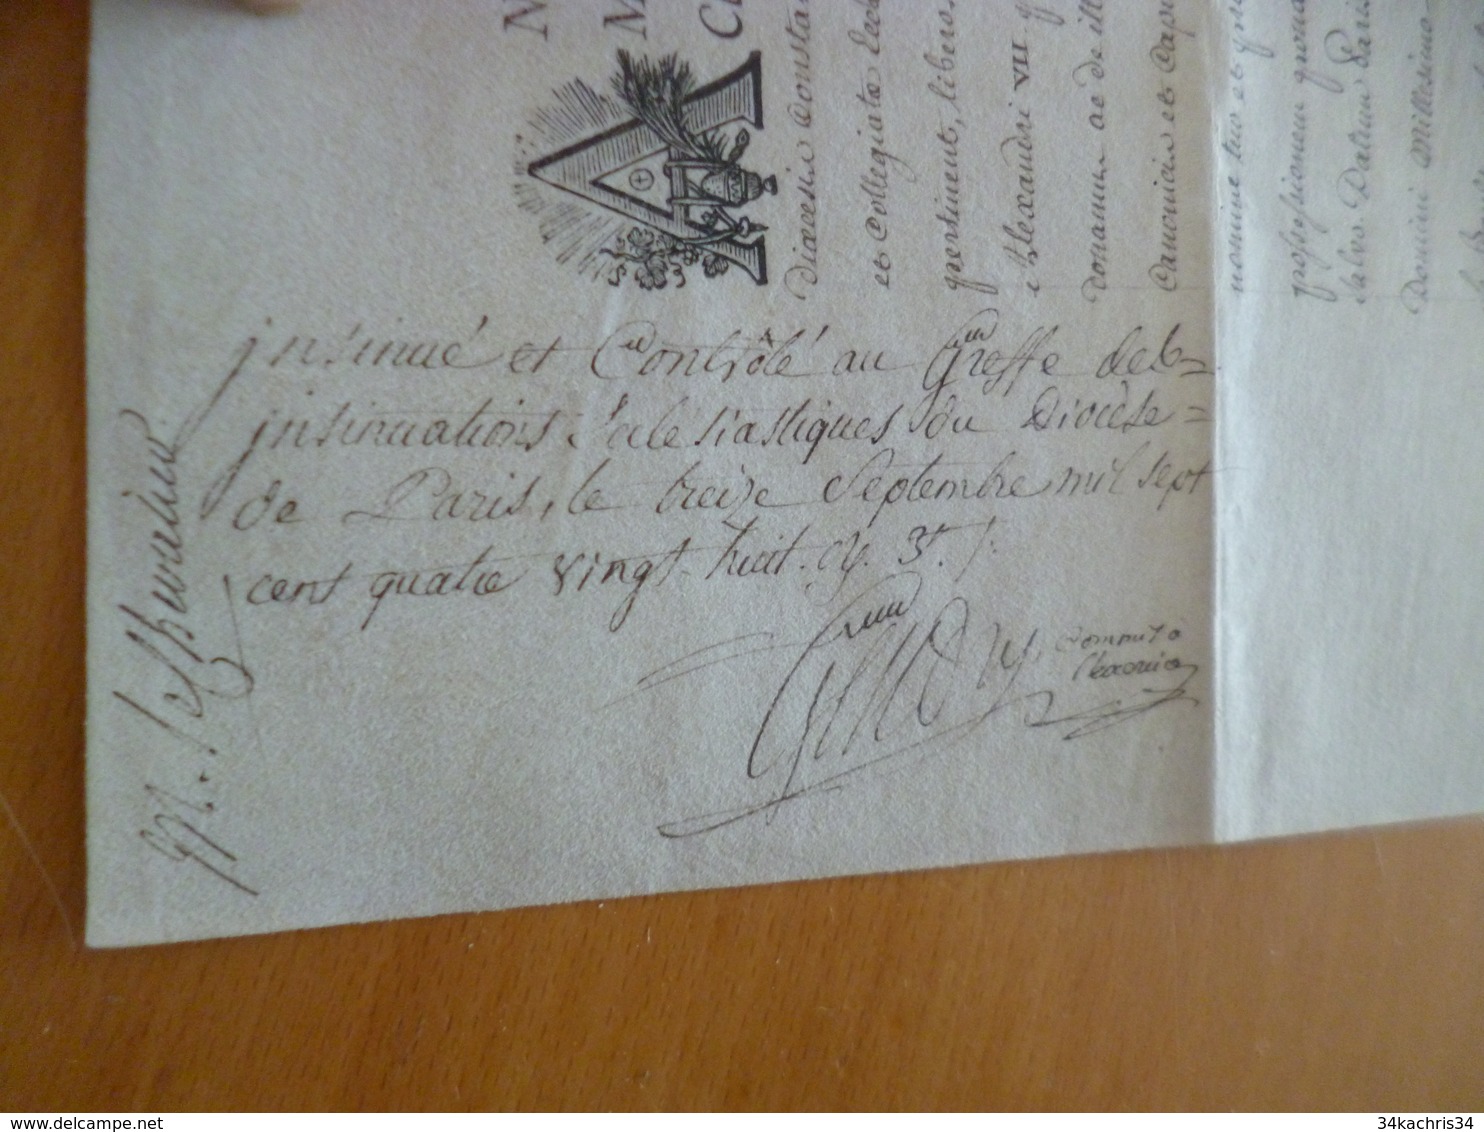 Diplôme sur Velin Théologie Leclerc de Juigne Archevèque de Paris Sceau autographe généralité vignette 1788